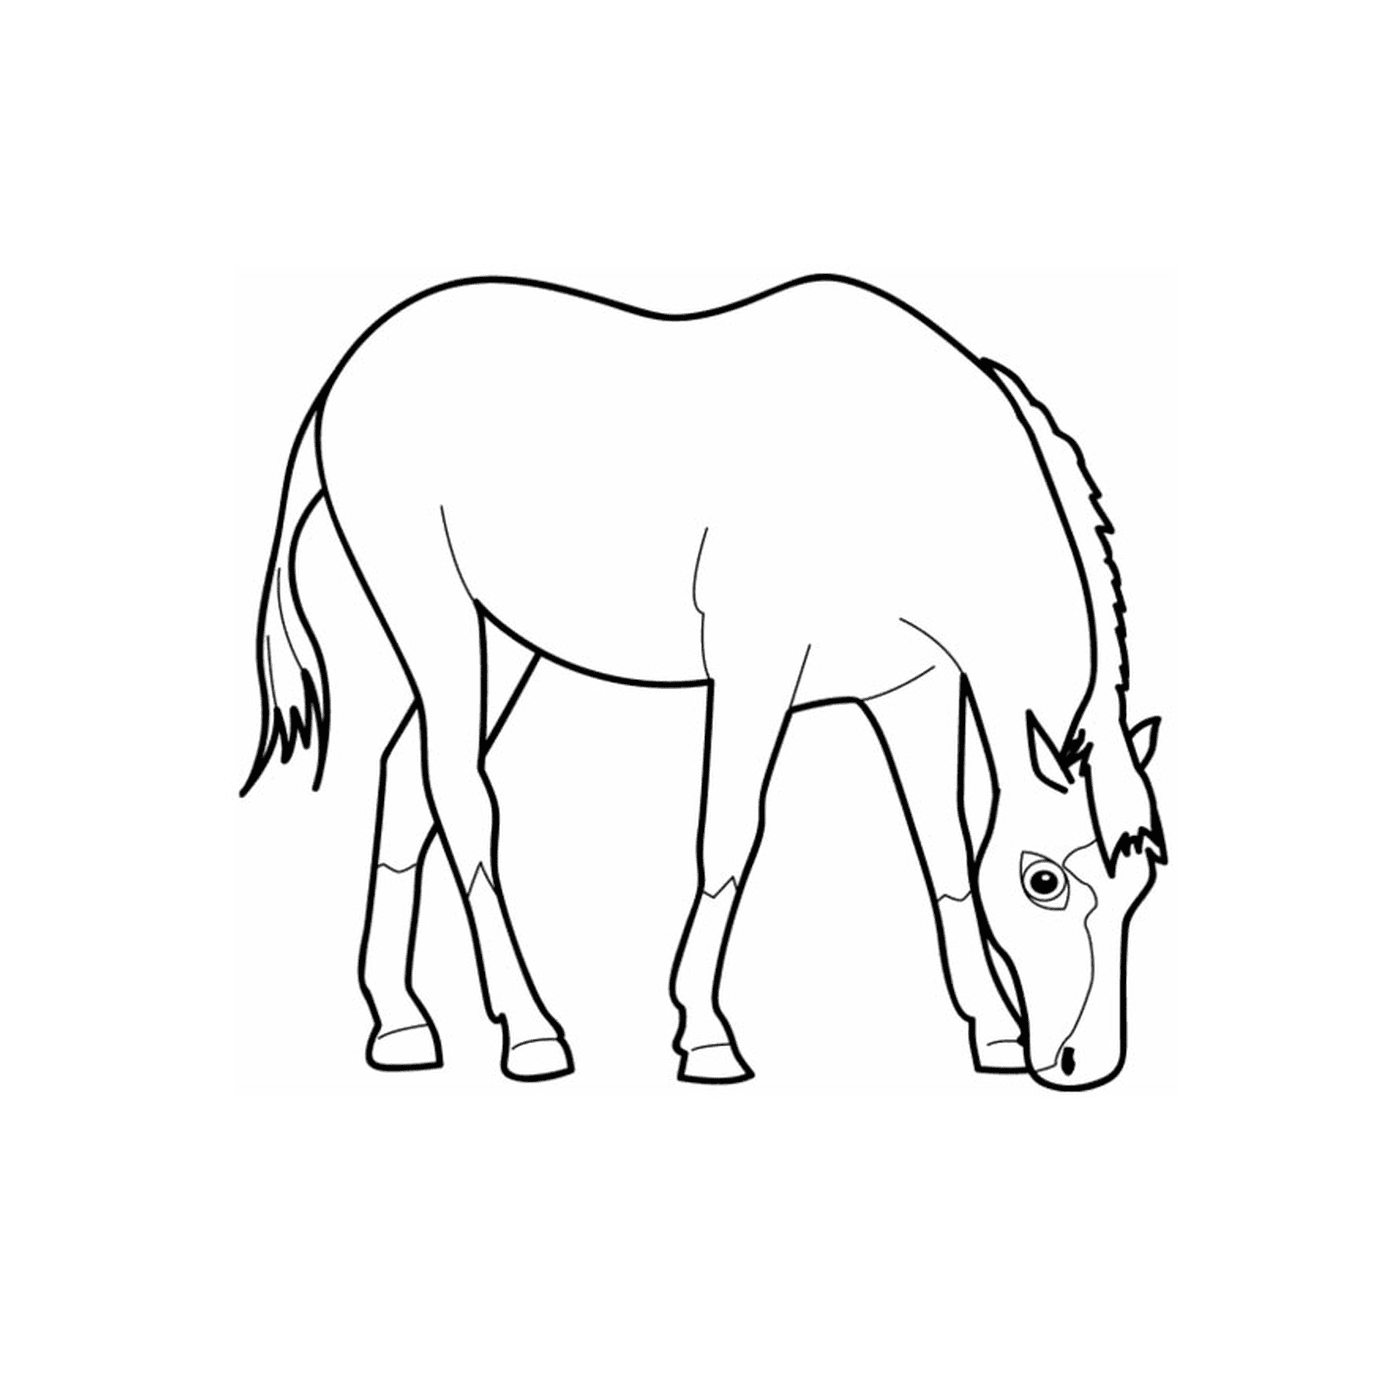   Cheval simple - Un cheval qui broute 